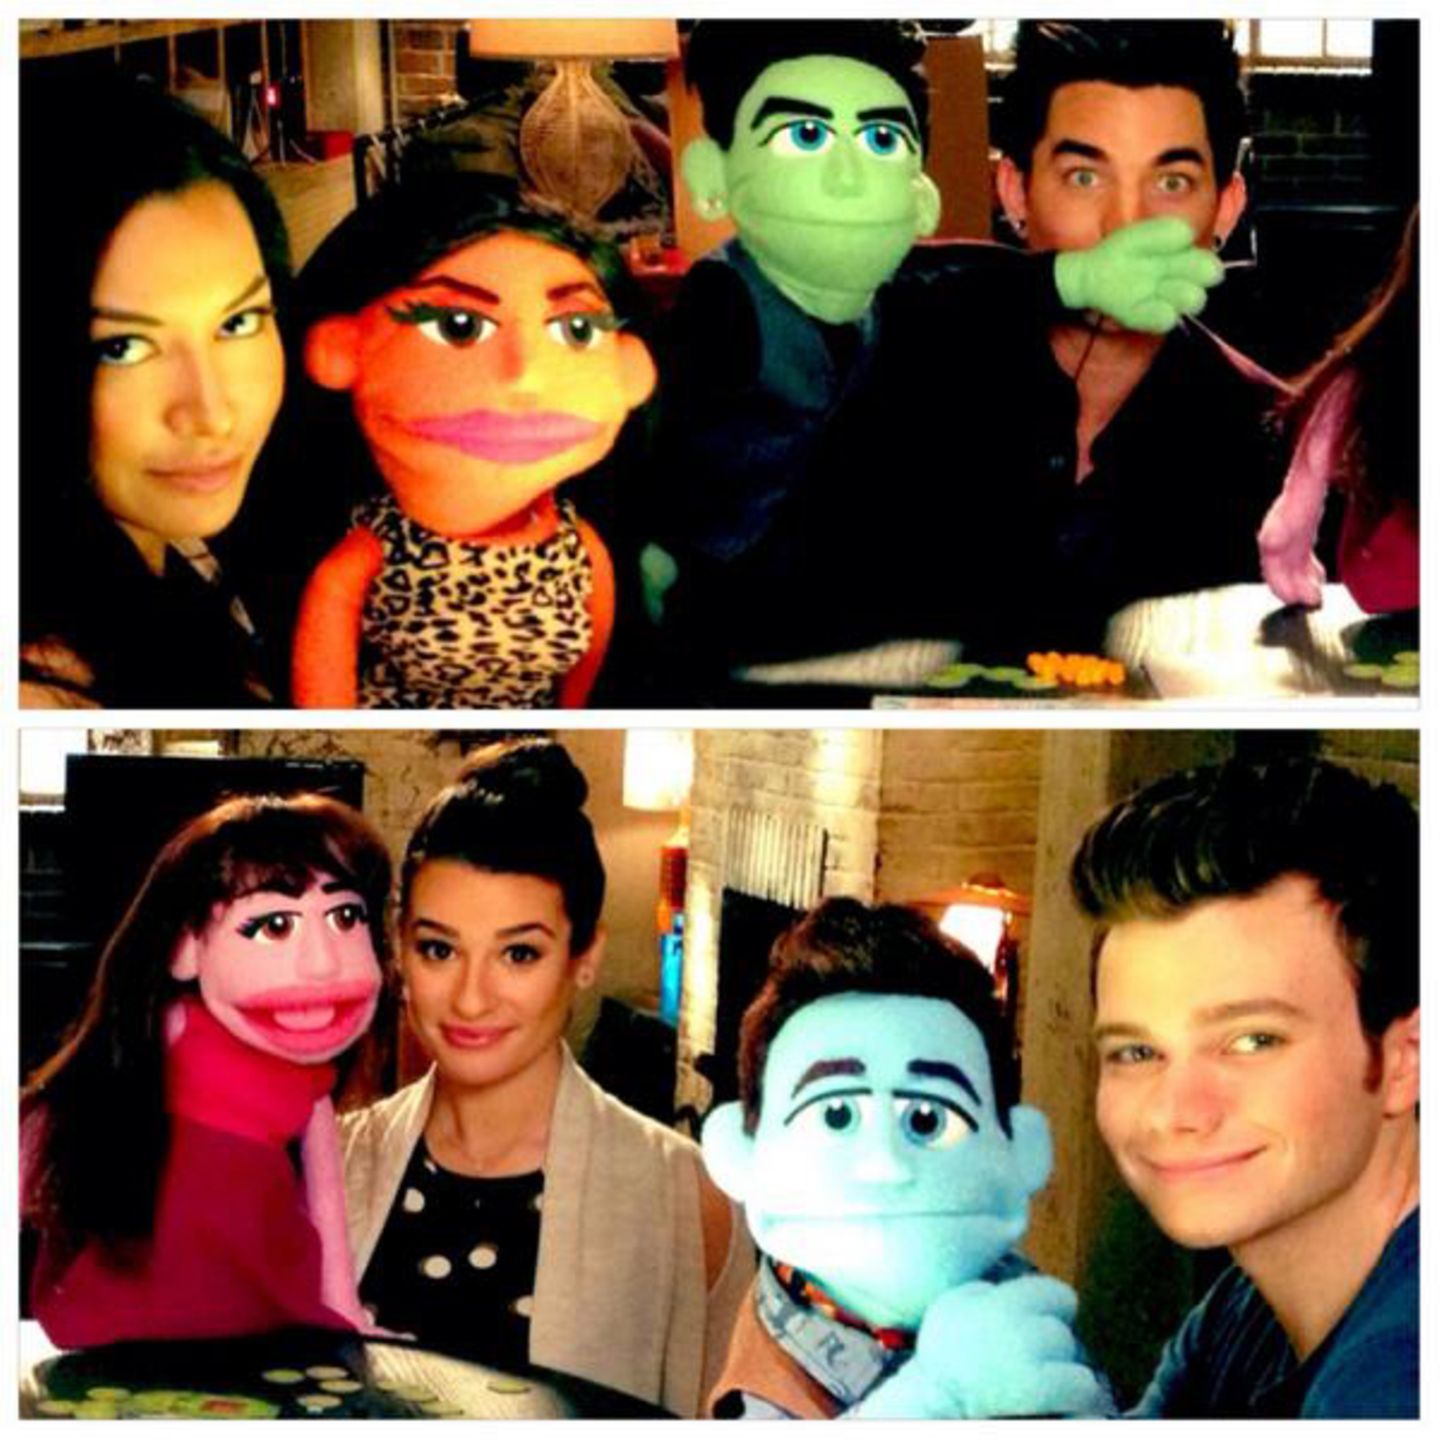 Die "Glee"-Darsteller Naya Rivera, Adam Lambert, Lea Michele und Chris Colfer zeigen sich mit ihrer eigenen Muppet Version und sorgen so für Spekulationen um eine Glee-Muppet-Episode.